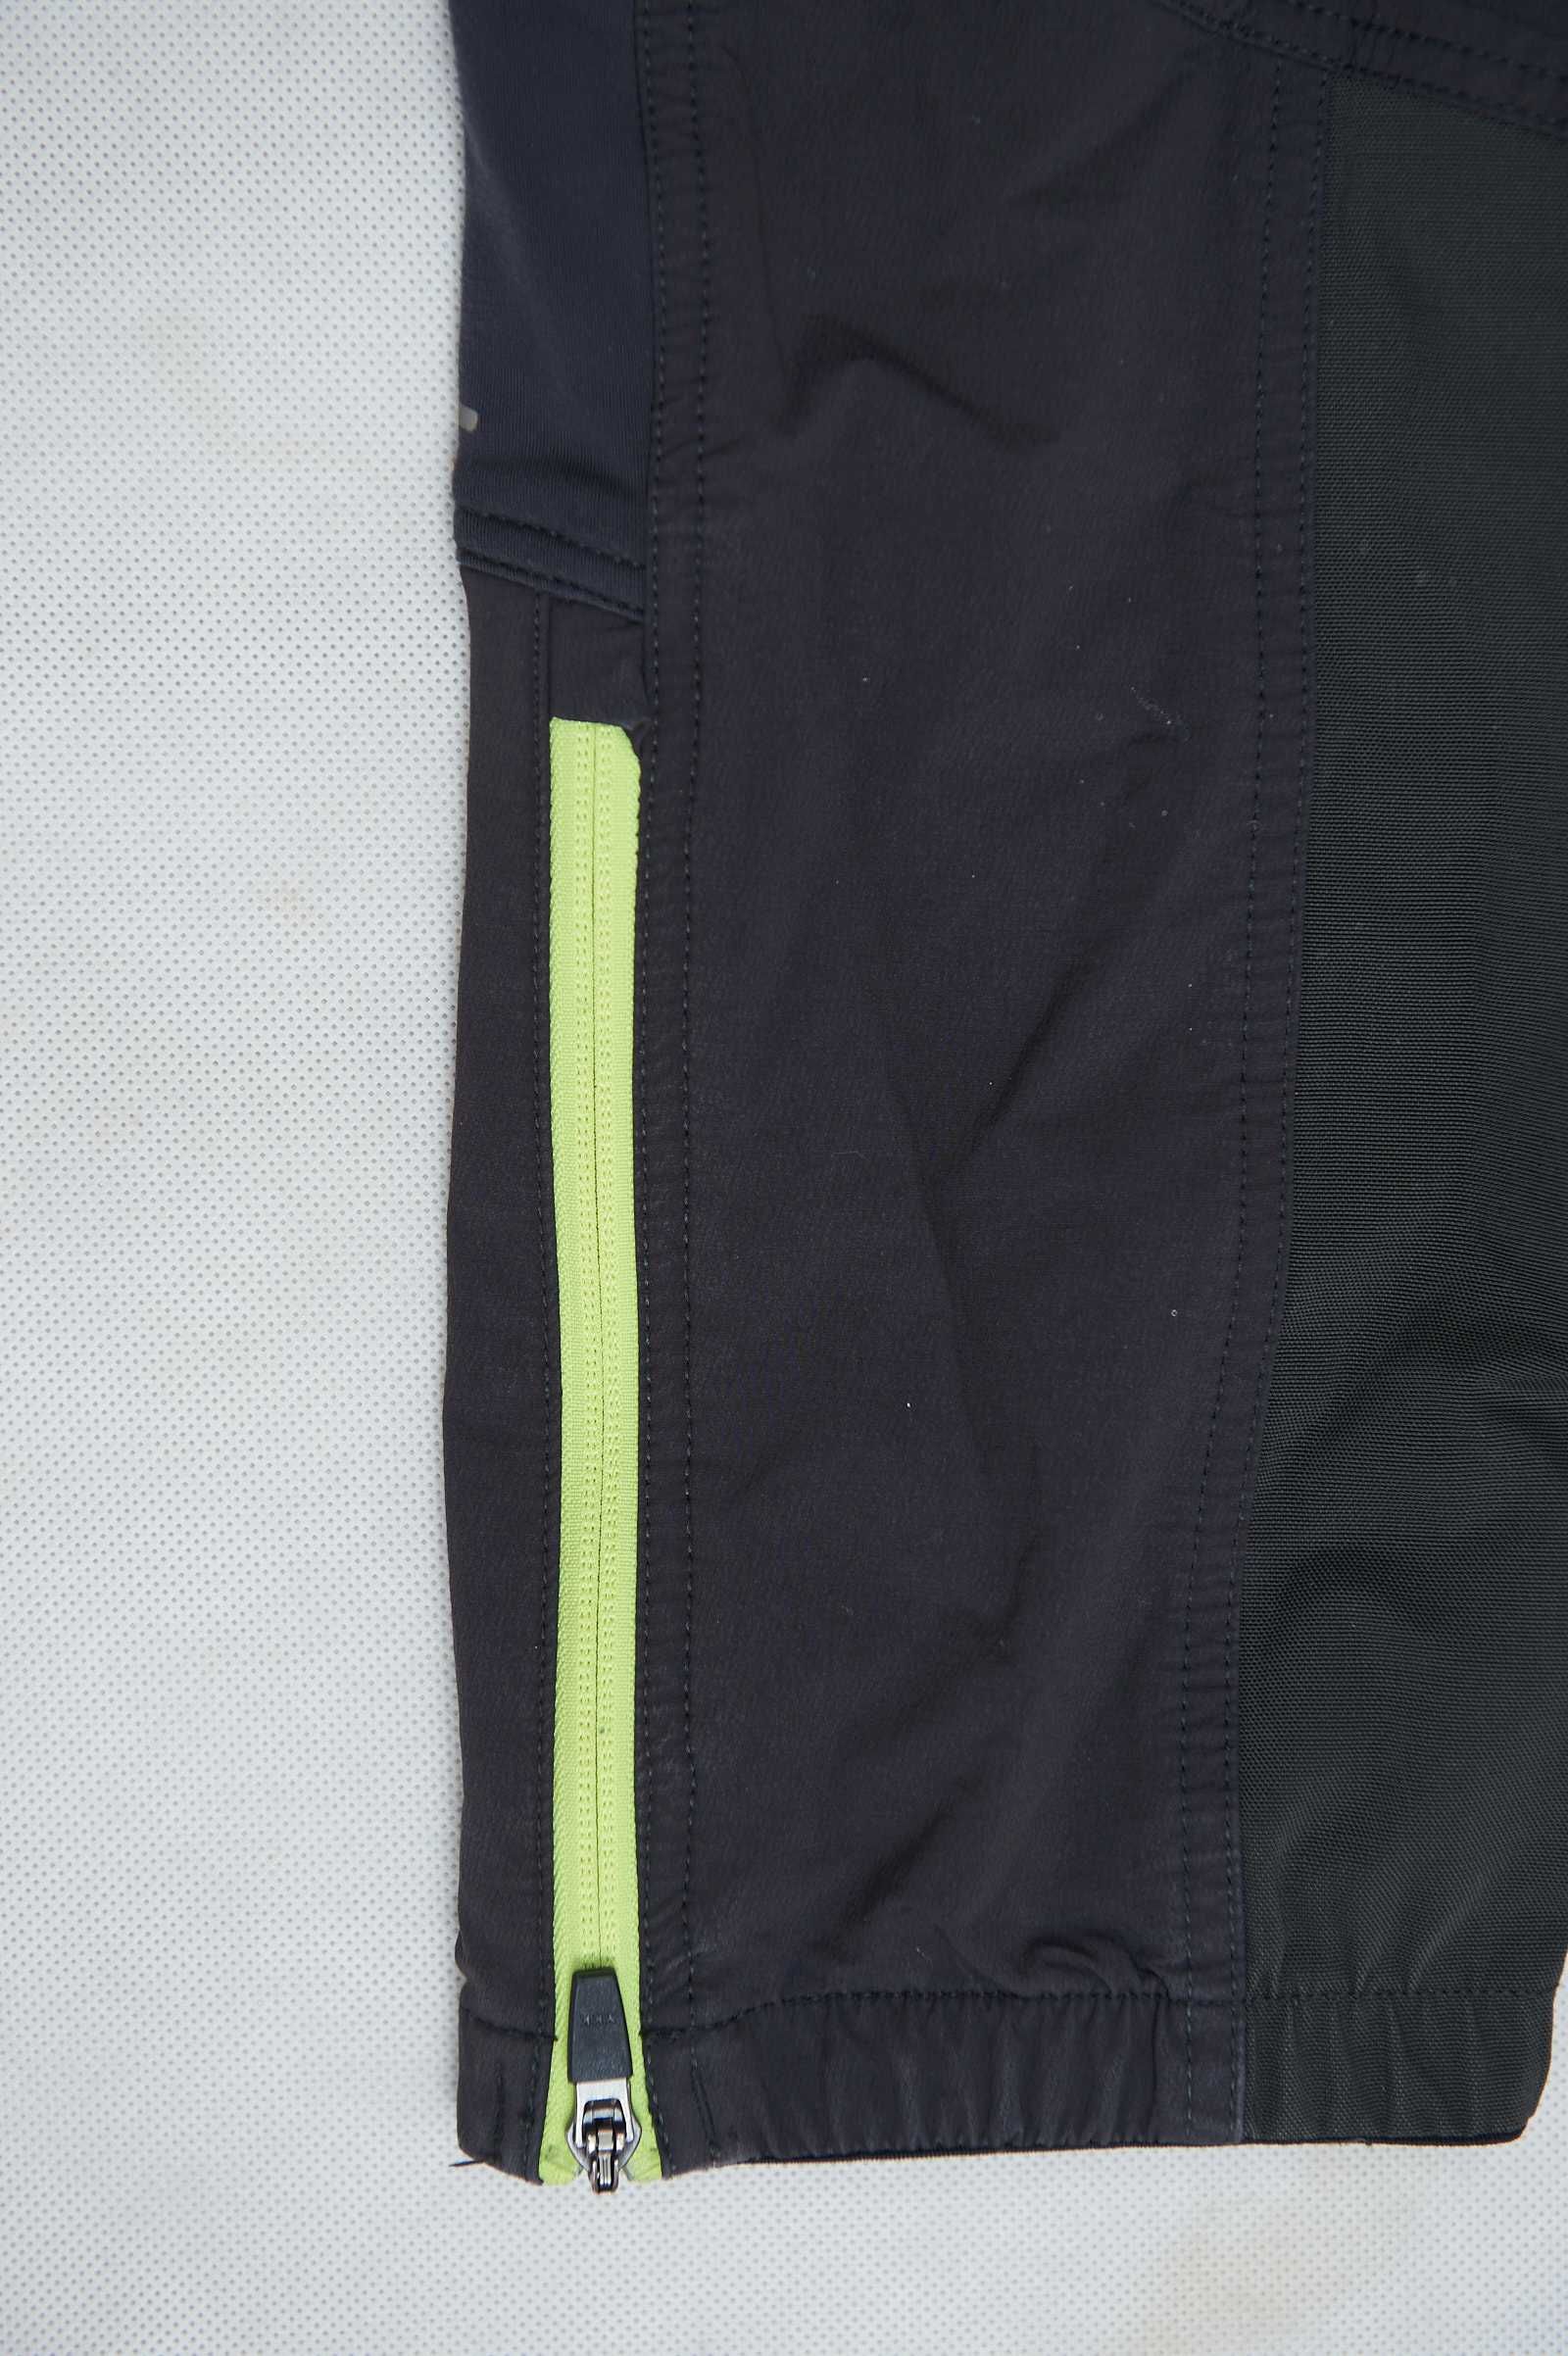 Dynafit Speedfit DST spodnie trekkingowe size M 48